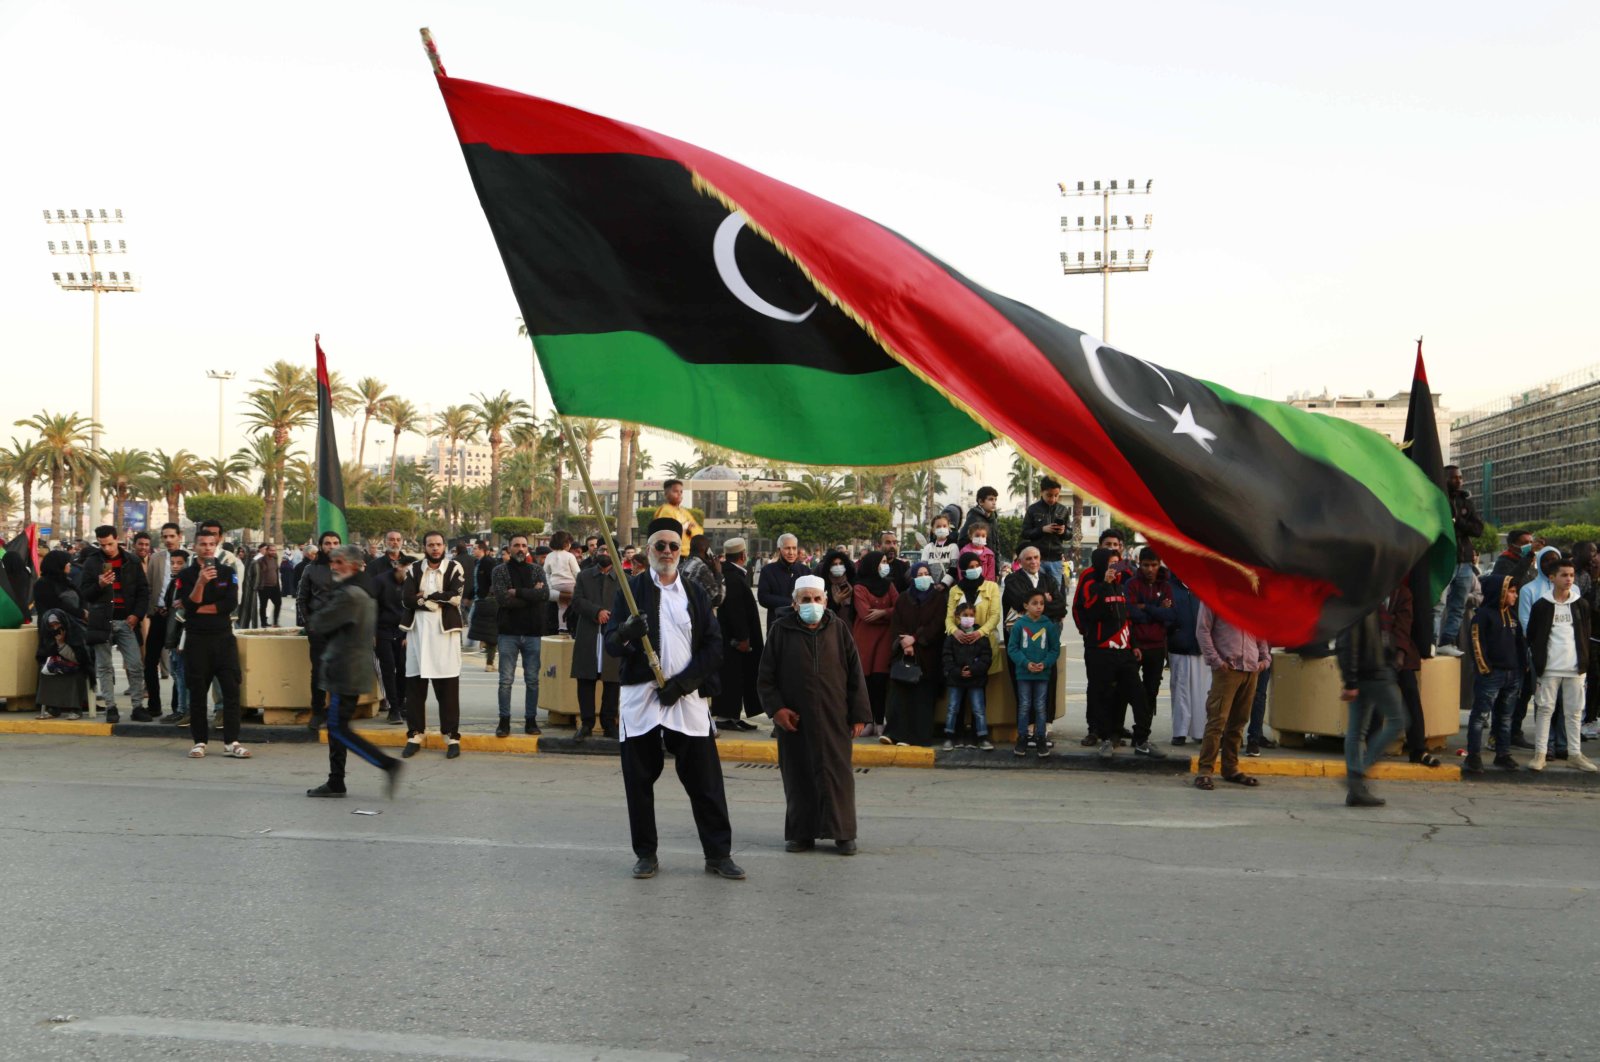 Bentrokan baru, pemerintah yang bersaing mendorong Libya kembali ke dalam kekacauan